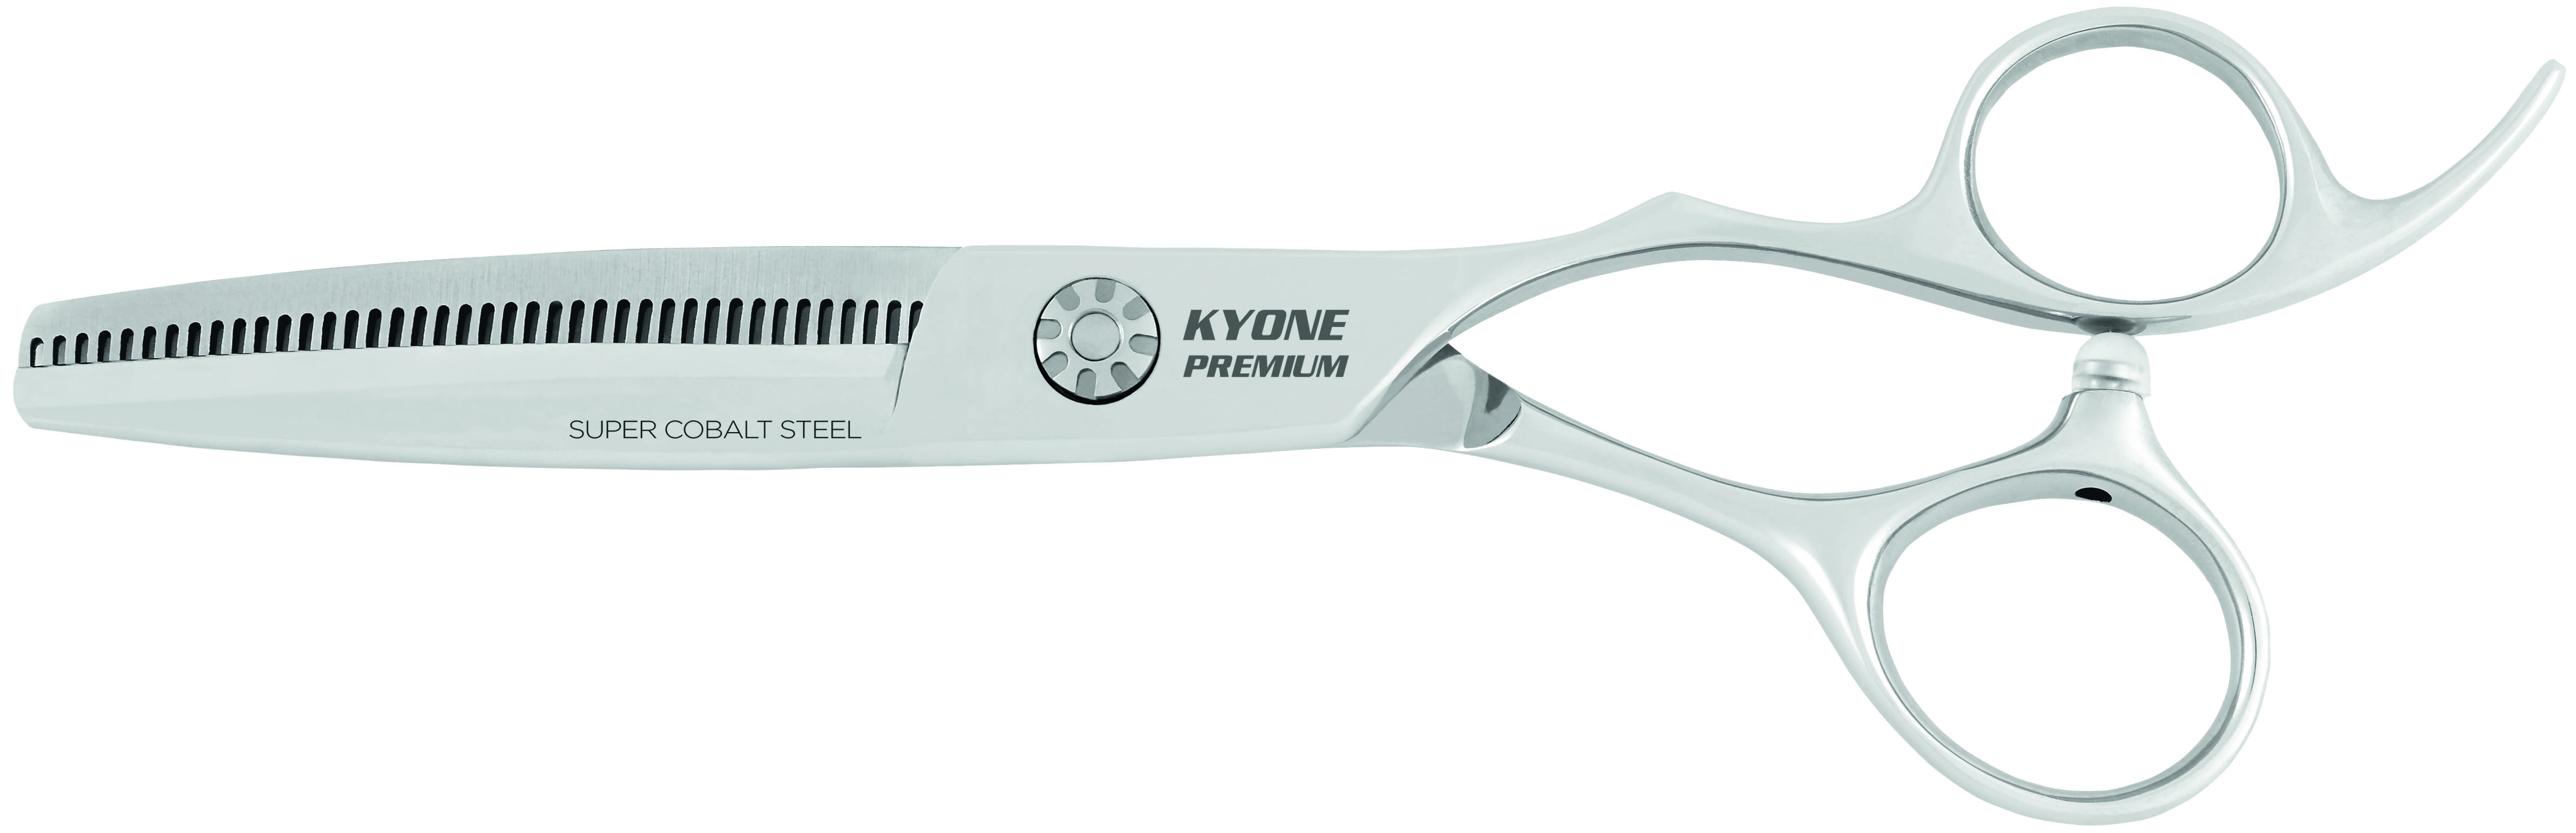 Kyone Premium Effilierschere 2400/6.0"